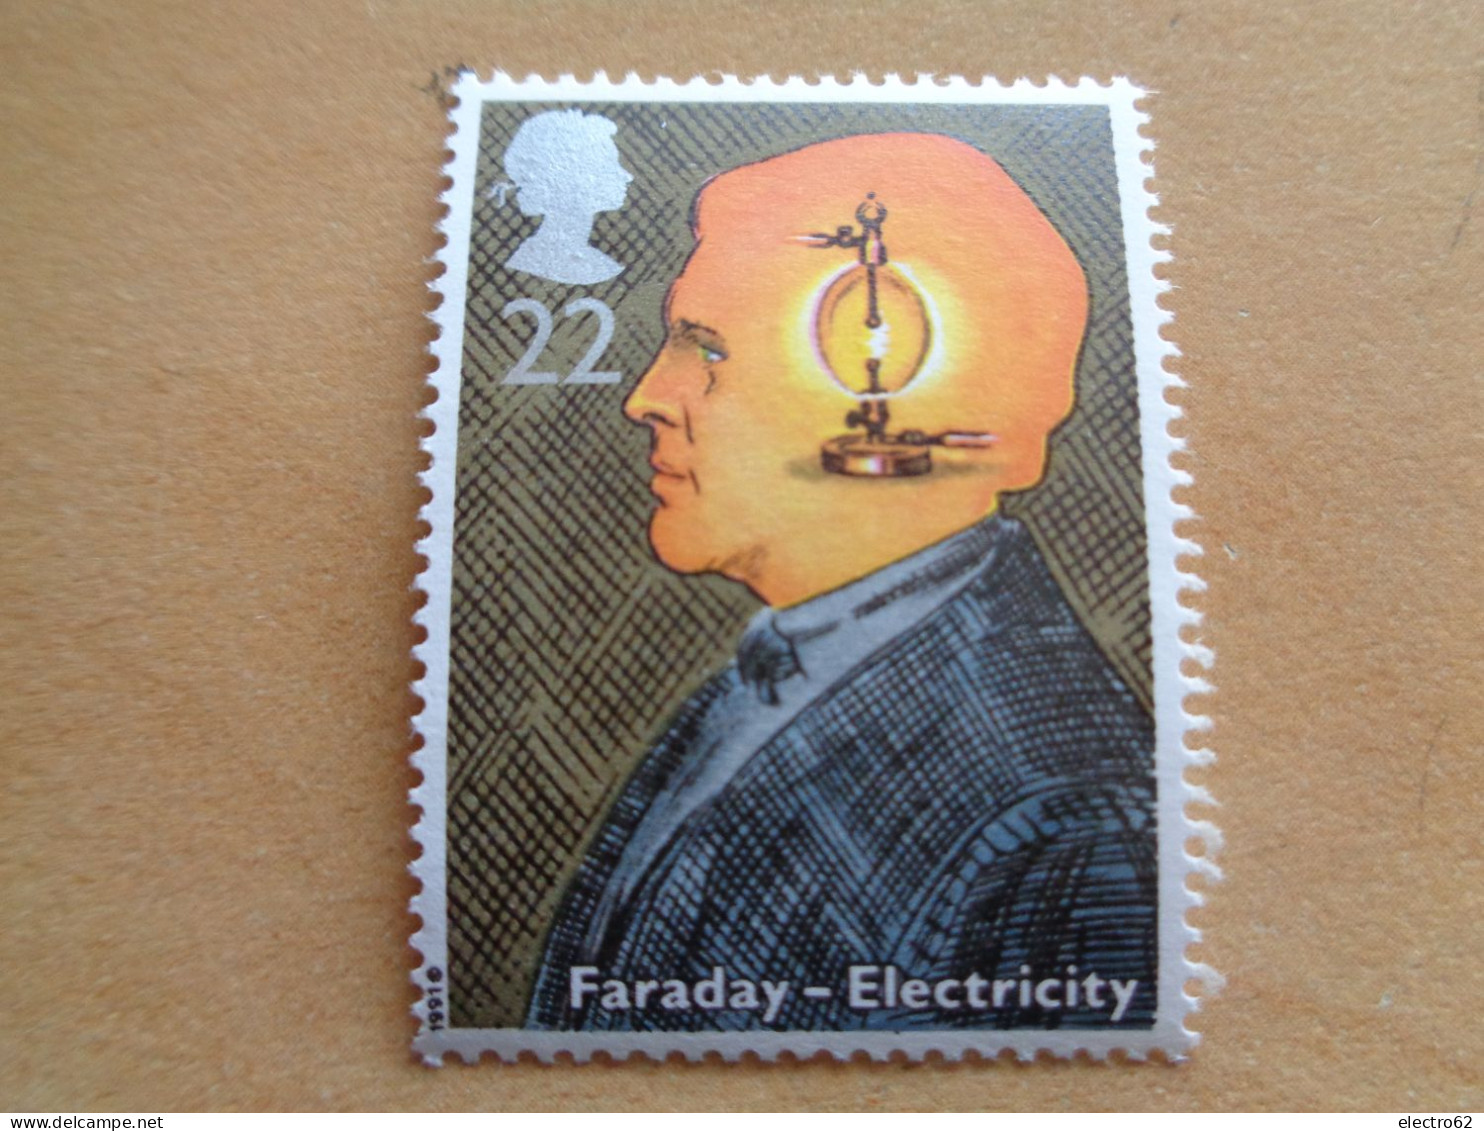 Grande Bretagne Great Britain Faraday électricité Electromagnétisme Electricity Großbitannien Brittannië 1991 Neuf - Electricity